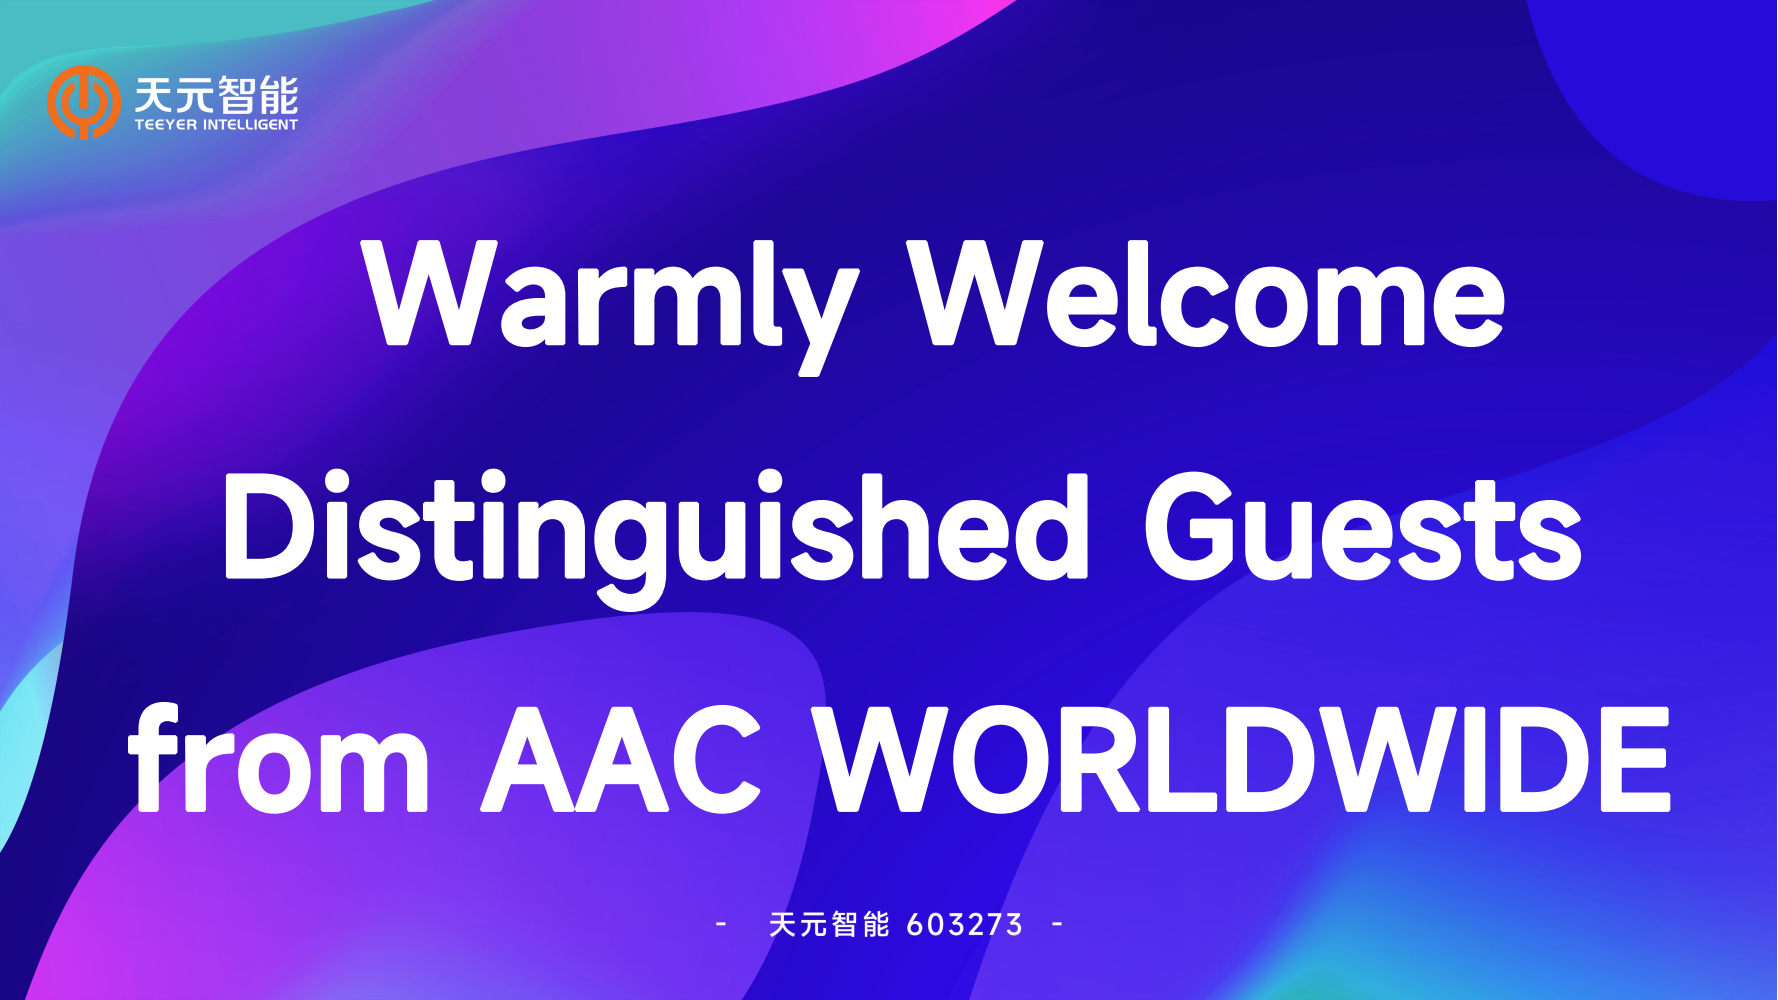 AAC WORLDWIDE_00.png